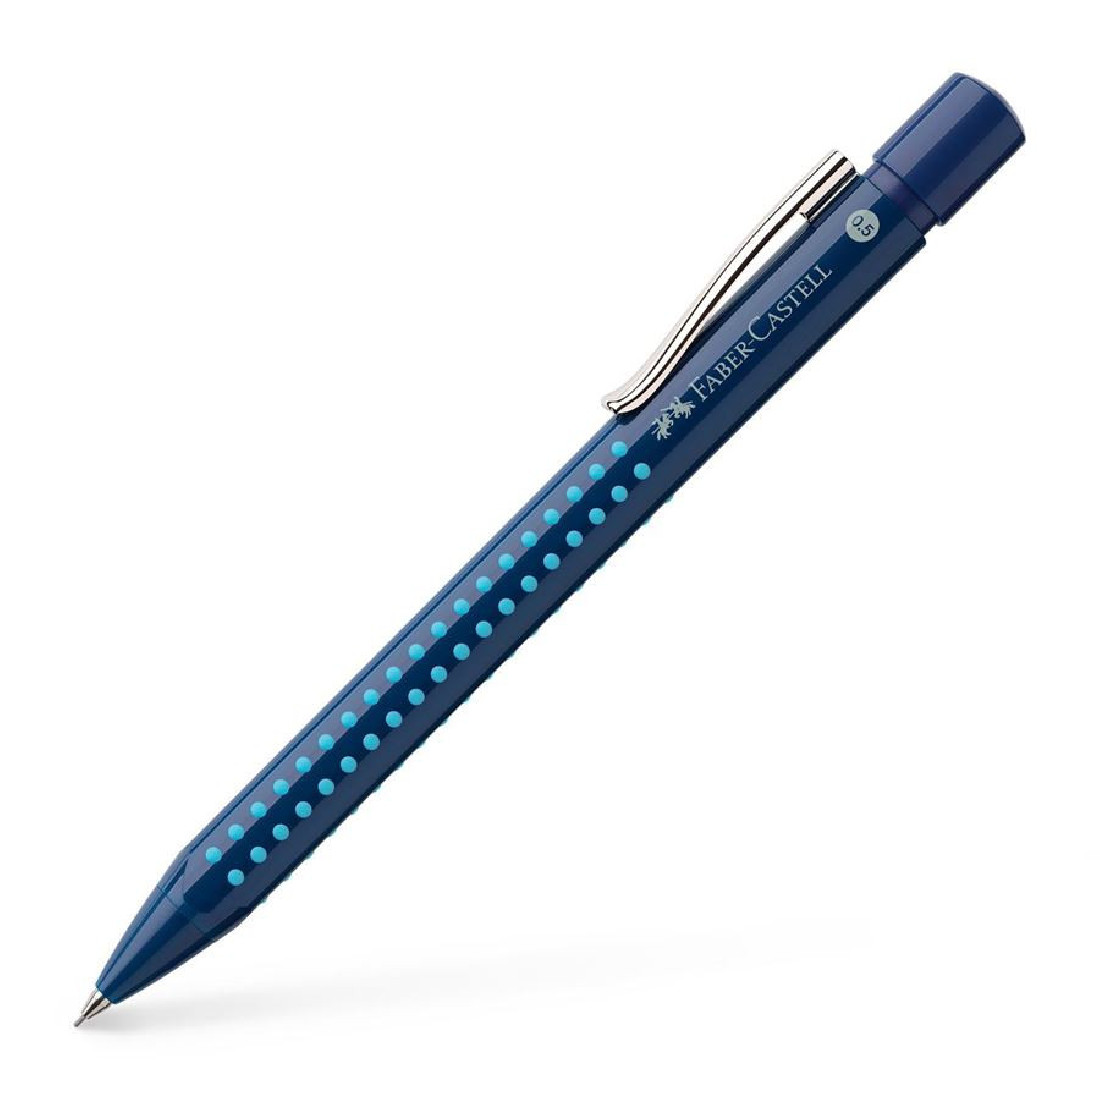 Faber Castell Mechanical pencil Grip 2010 mechanical pencil, 0.5 mm, blue-light-blue